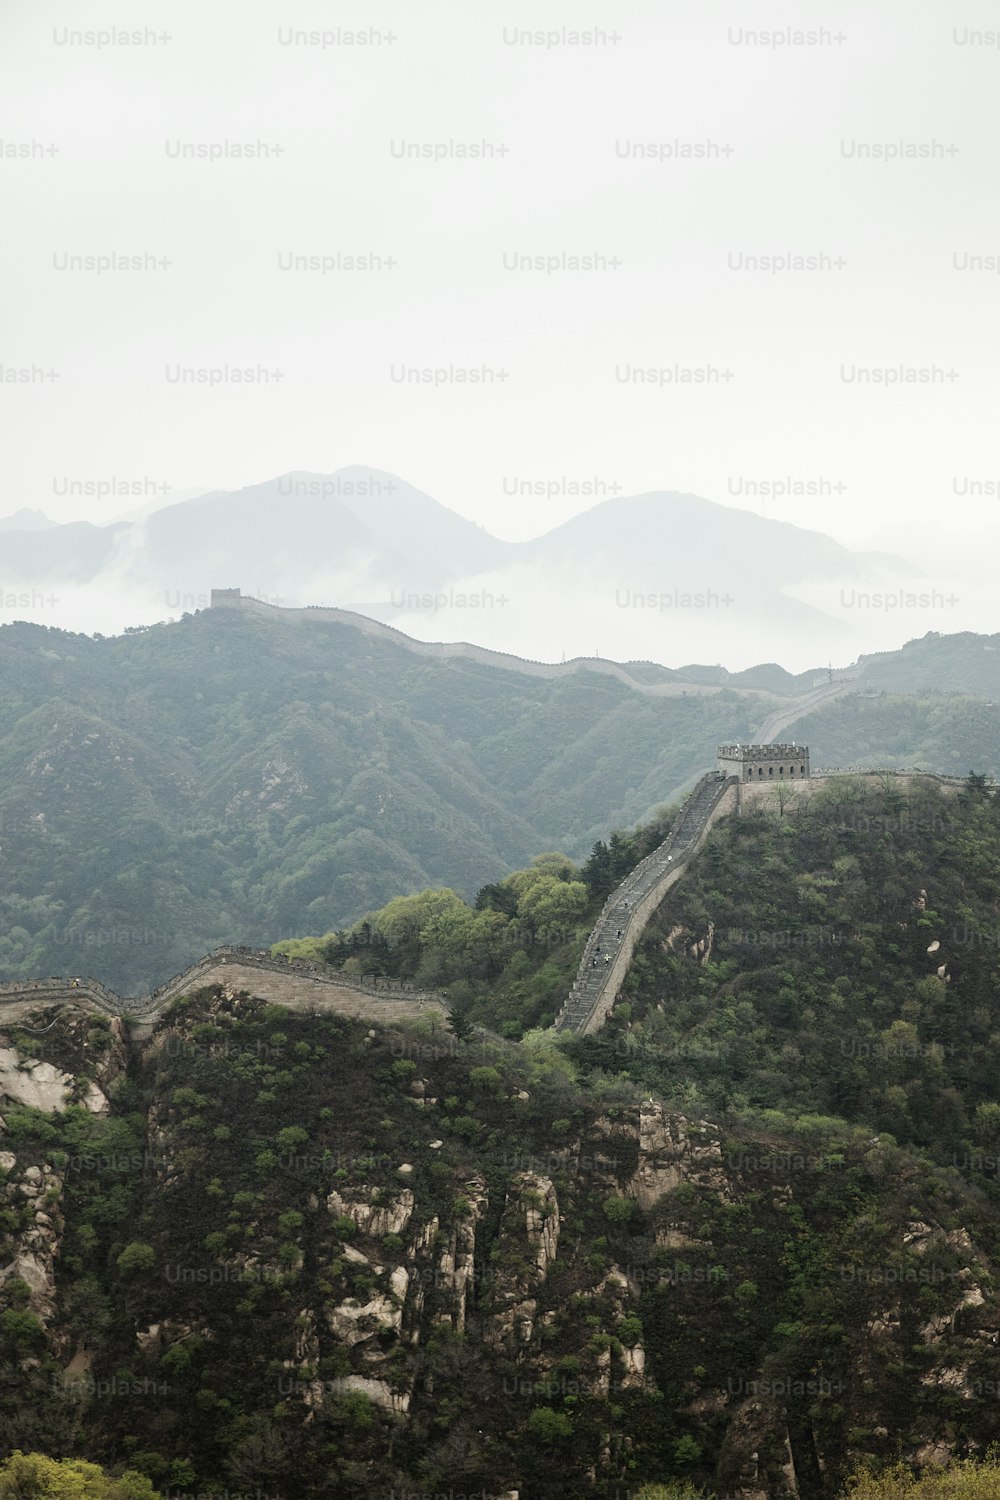 La Gran Muralla China en un día nublado